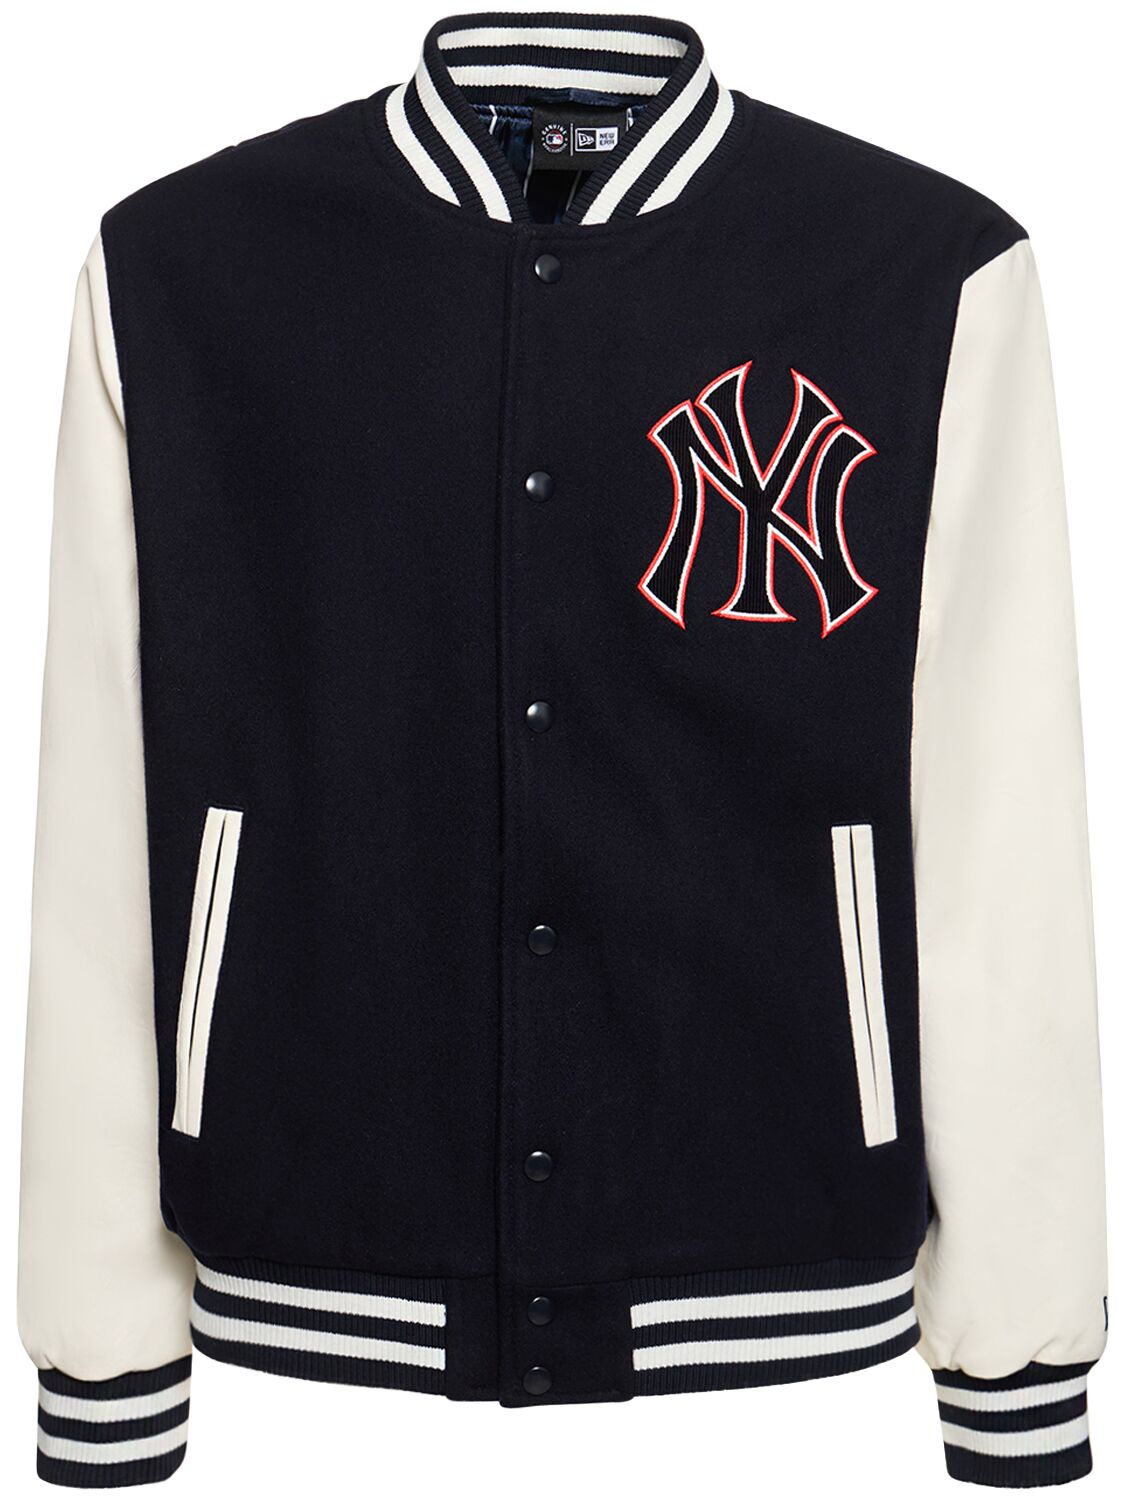 Mlb Lifestyle Ny Yankees Varsity Jacket